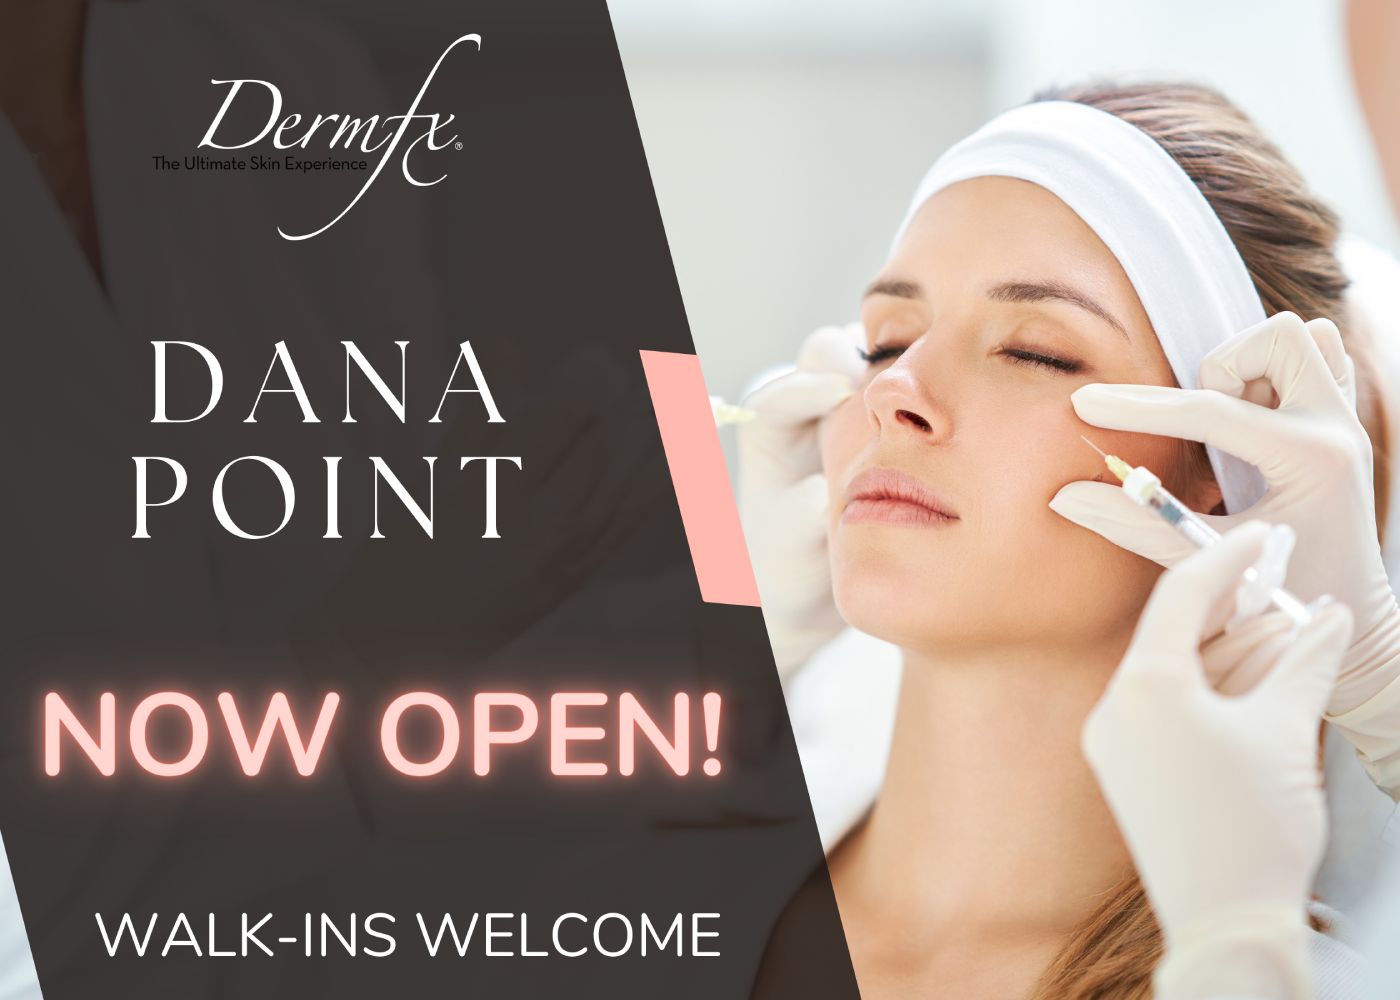 DermFx Dana Point is Now Open!